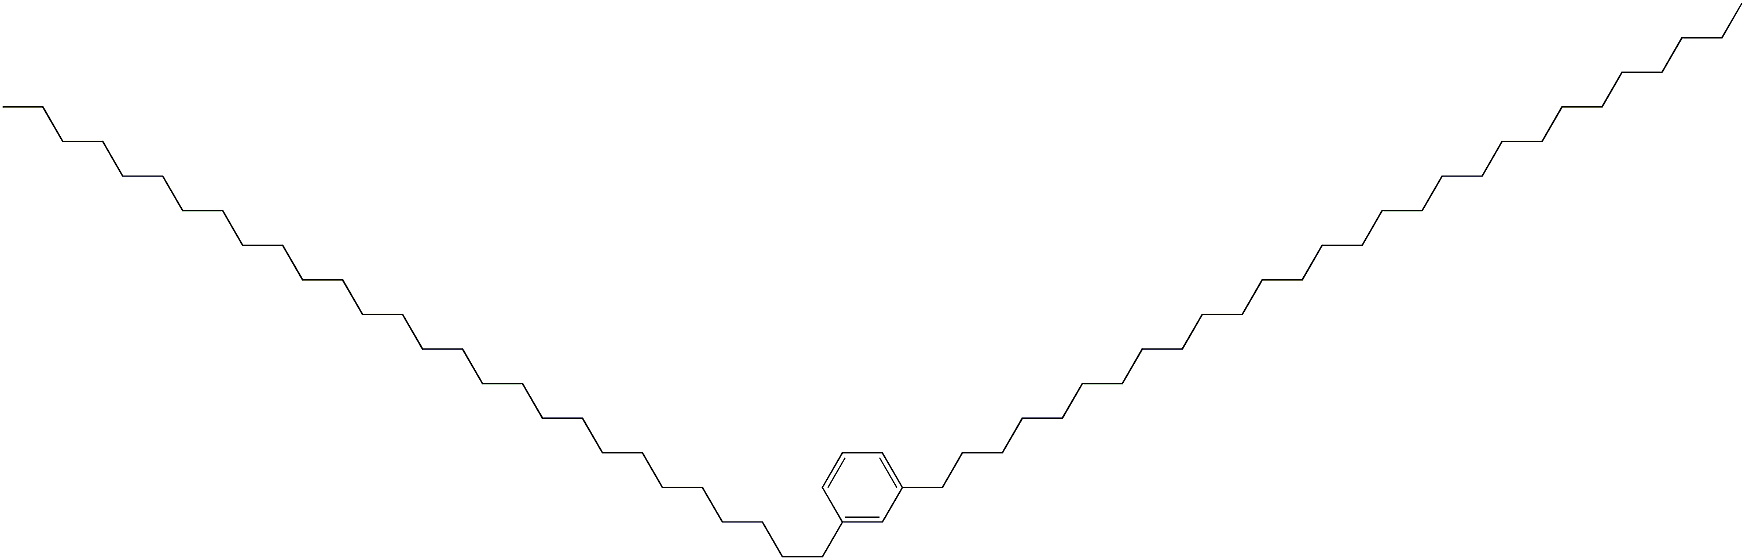 1,3-Dioctacosylbenzene